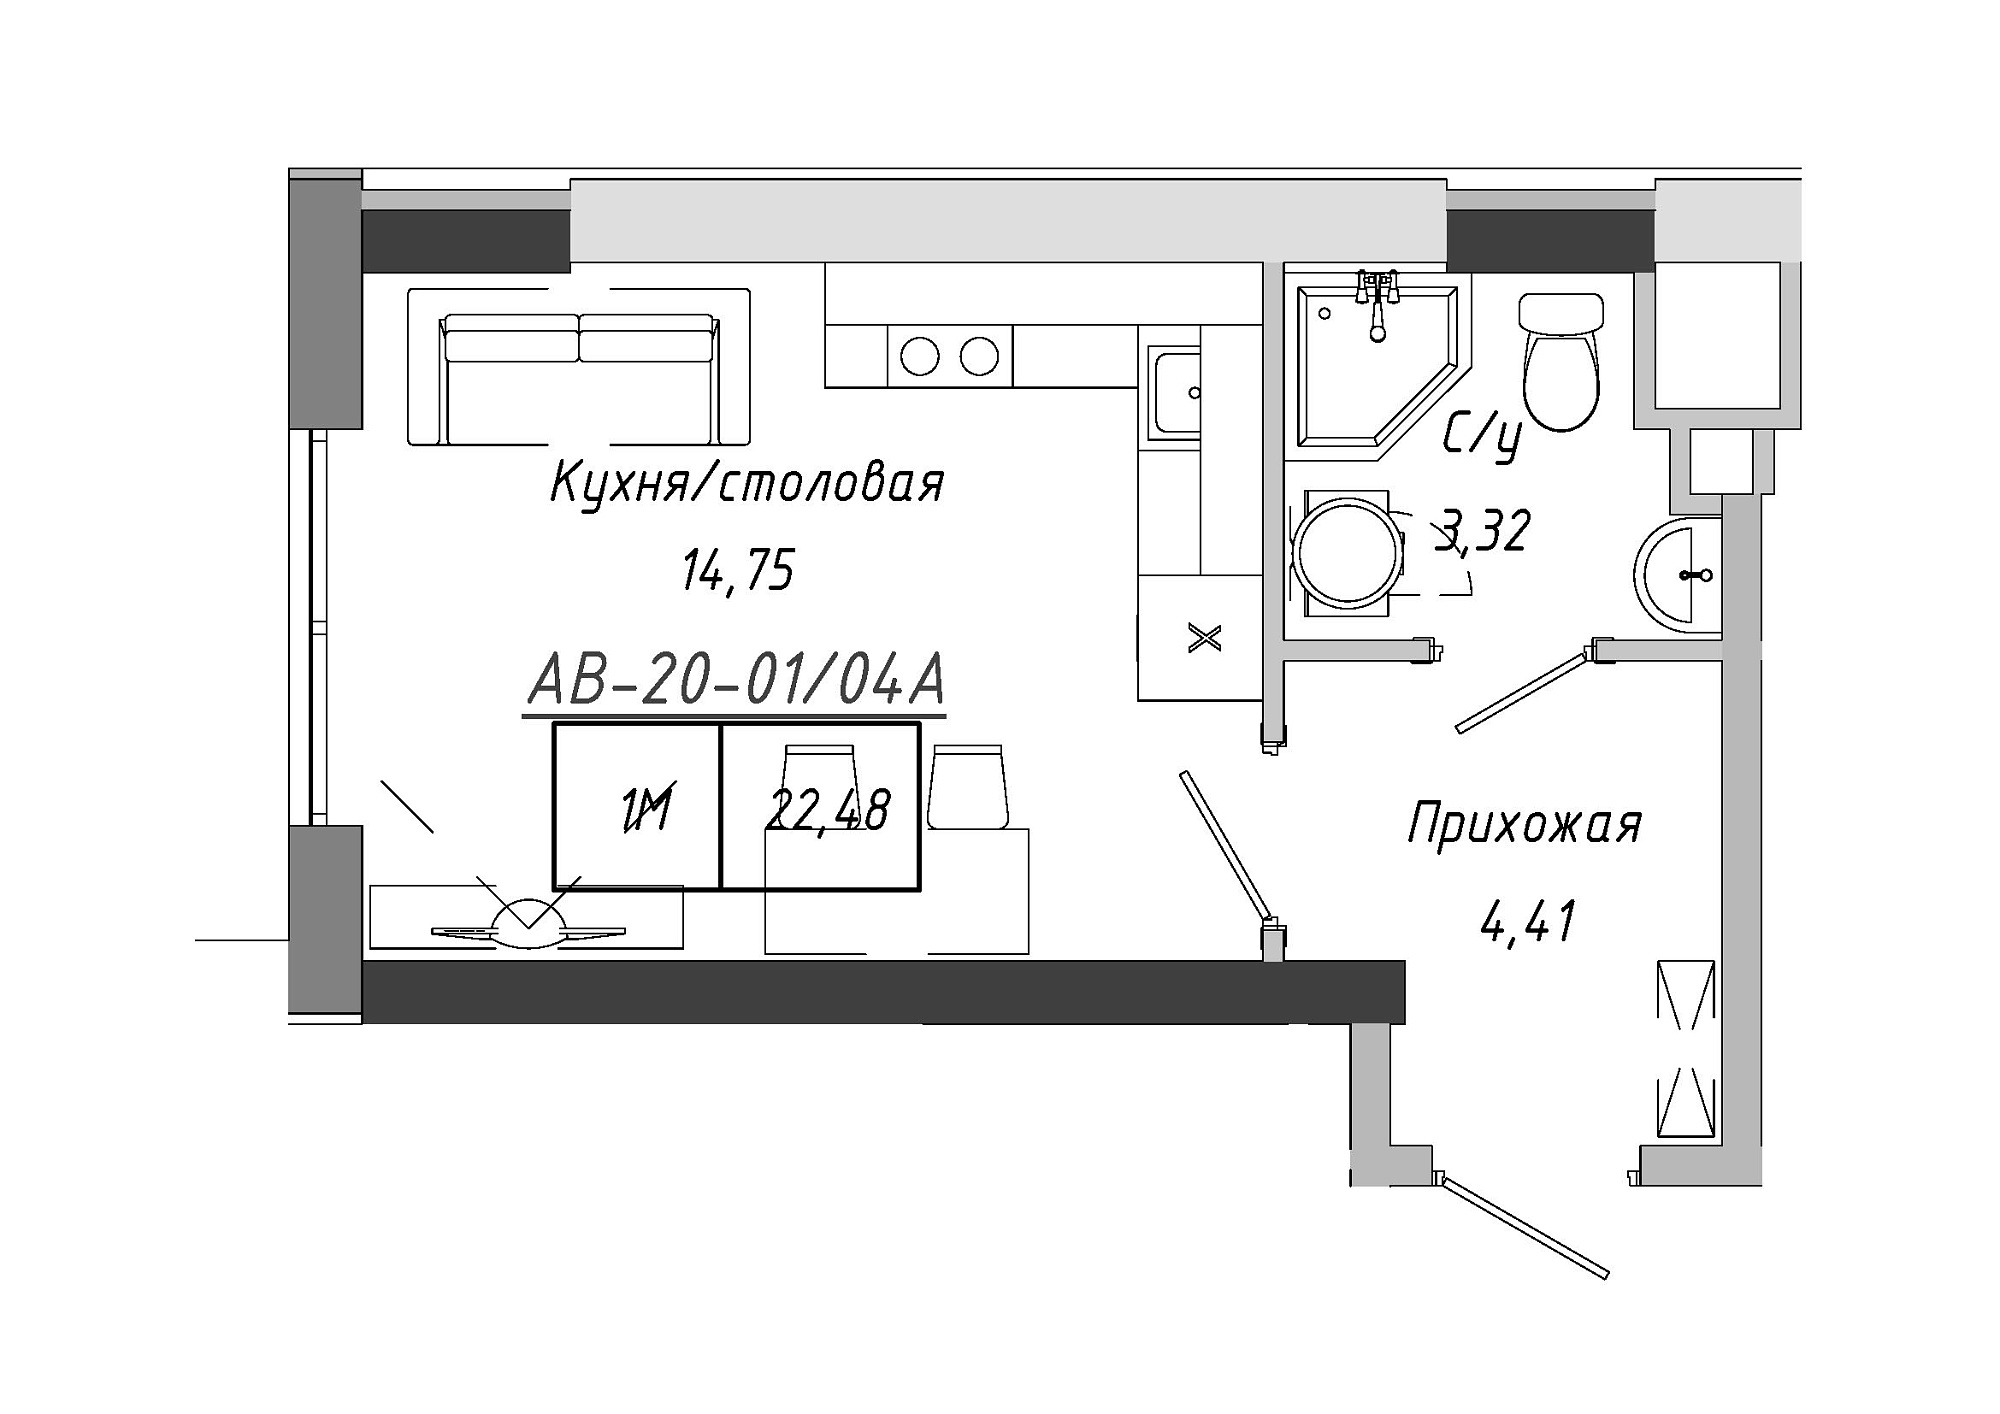 Планировка Smart-квартира площей 22.48м2, AB-20-01/0004а.